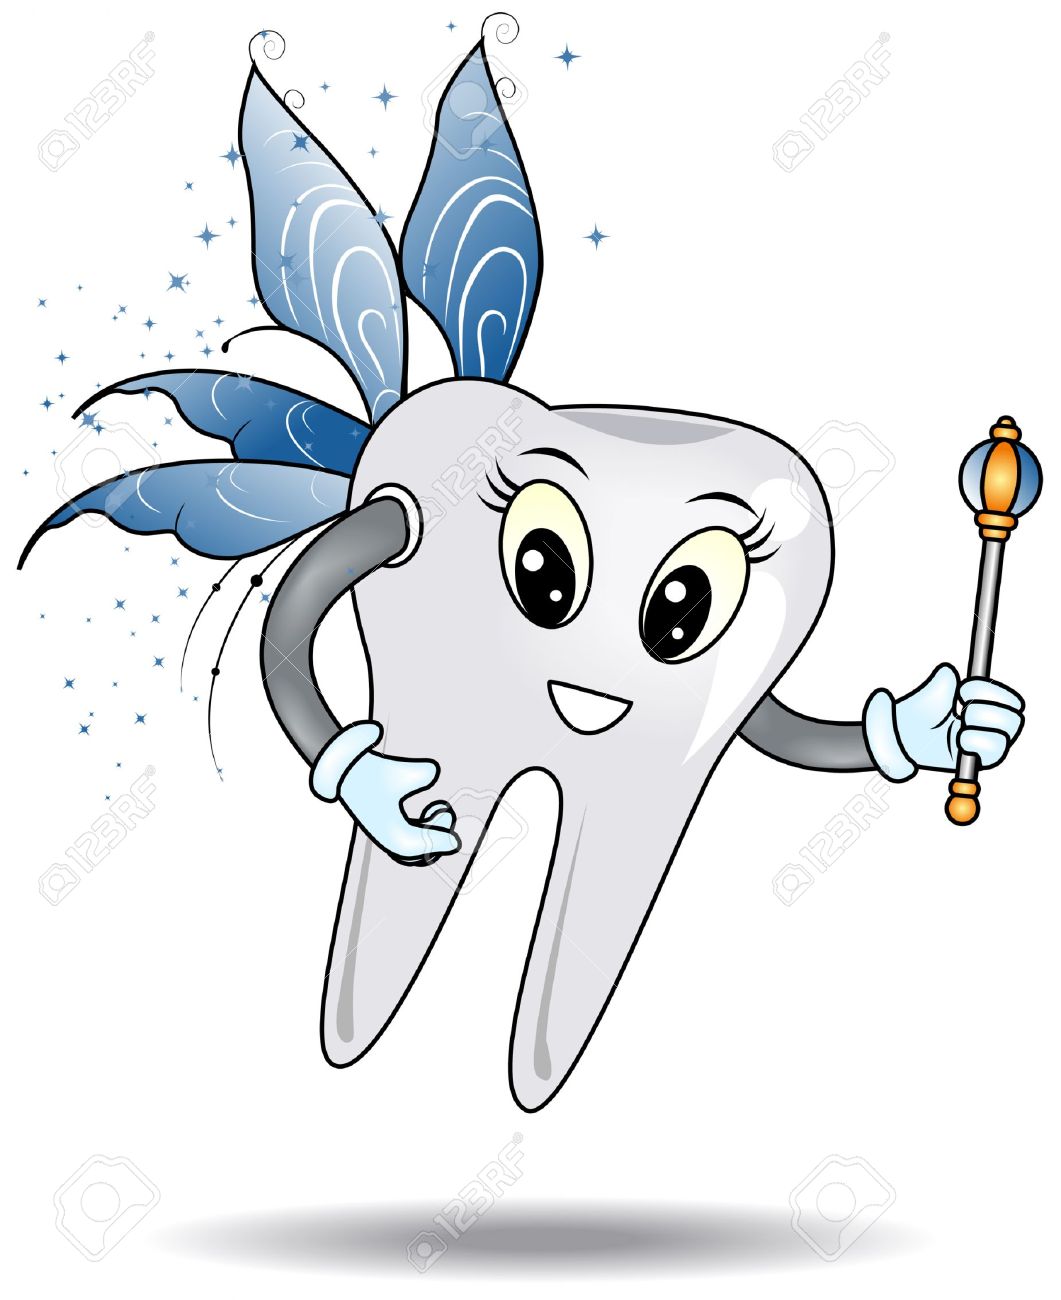 Tooth fairy clipart 2. Tooth  - Tooth Fairy Clip Art